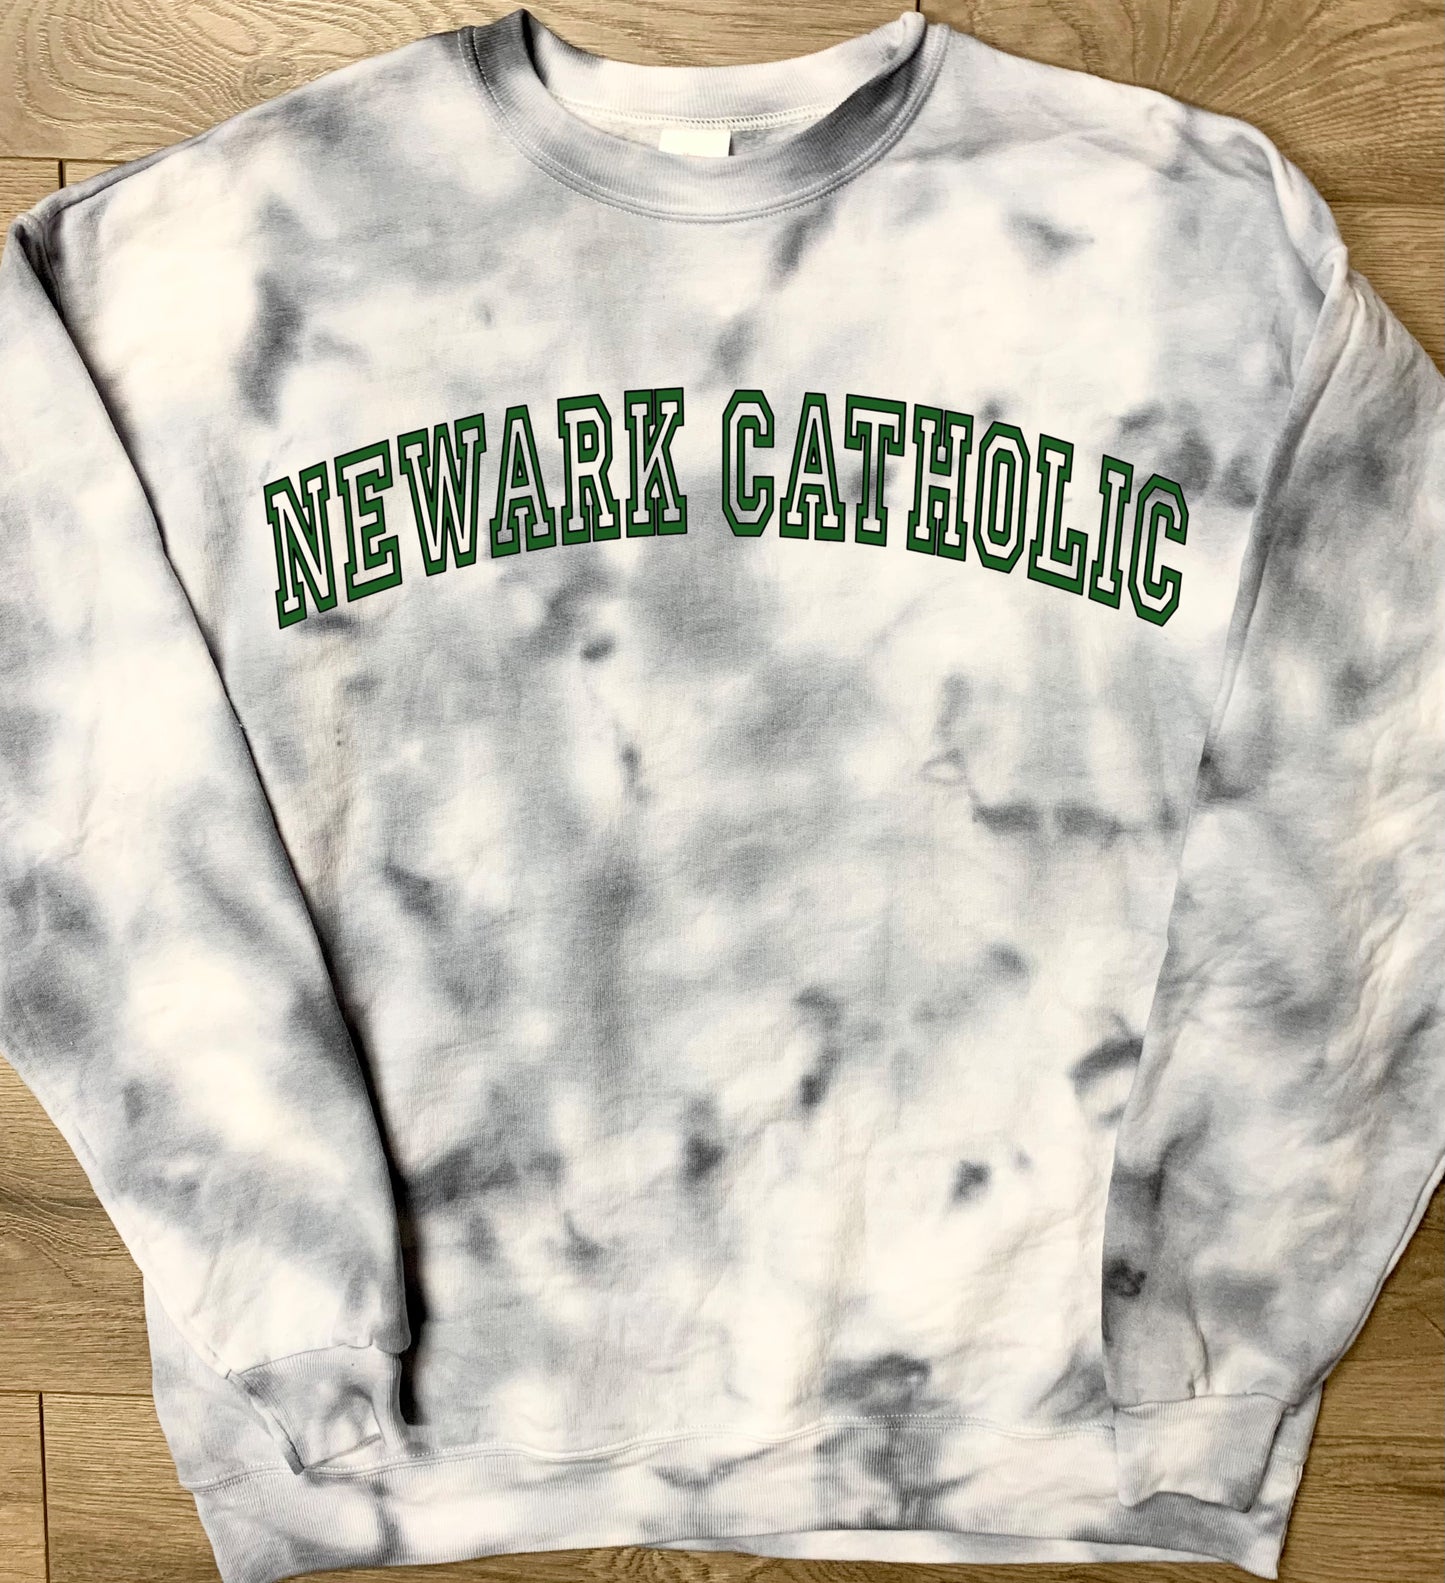 Hand-dyed Adult Newark Catholic Green Wave Gray Curved Block Newark Catholic Tie Dye Crewneck Sweatshirt